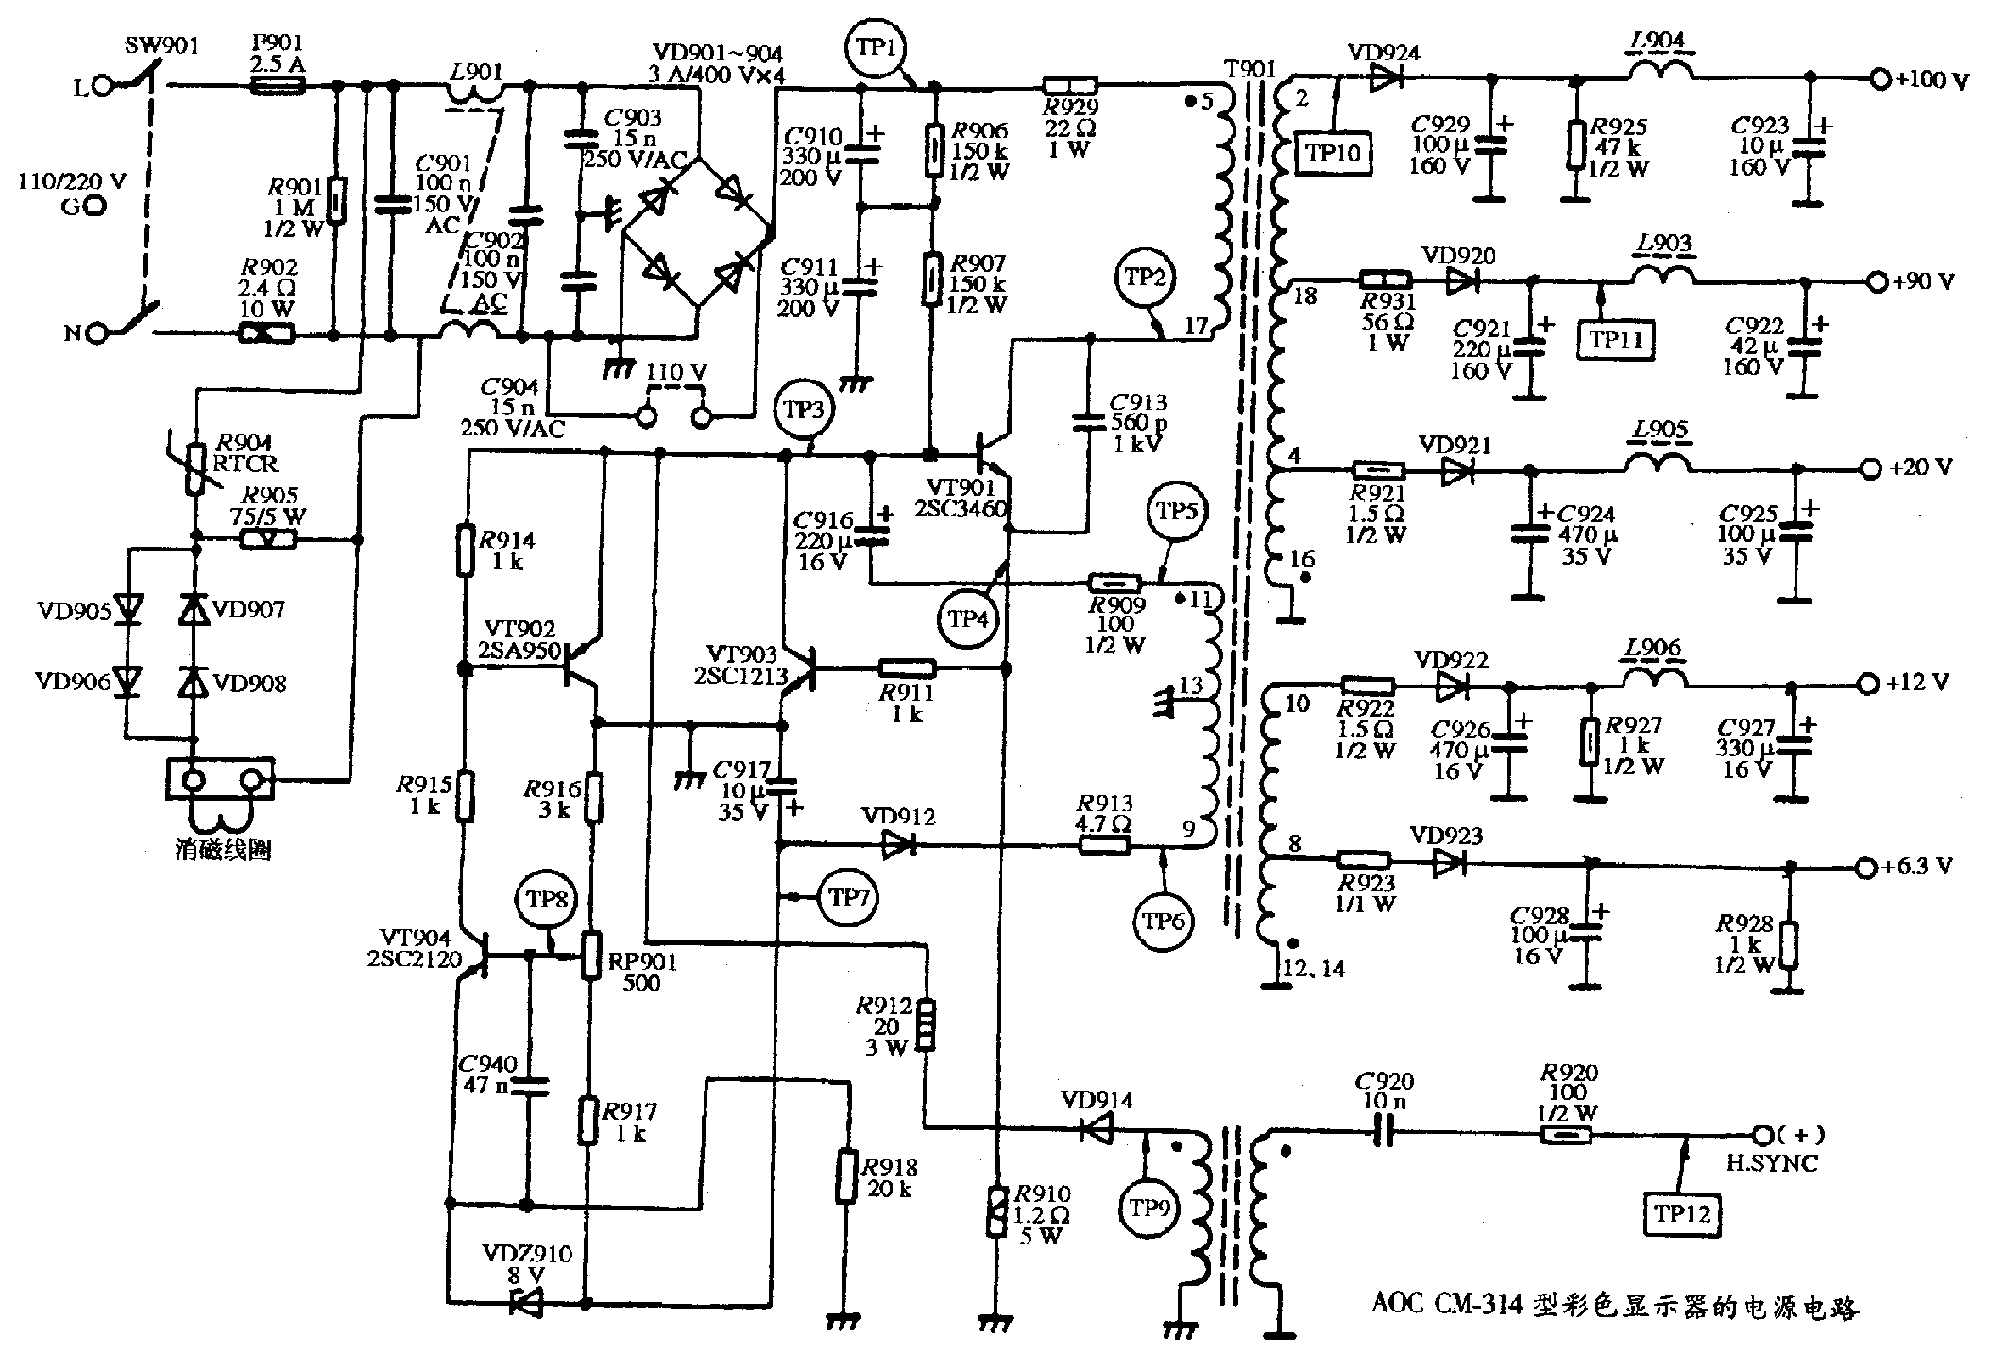 AOC CM-314型彩色显示器的电源电路图.gif